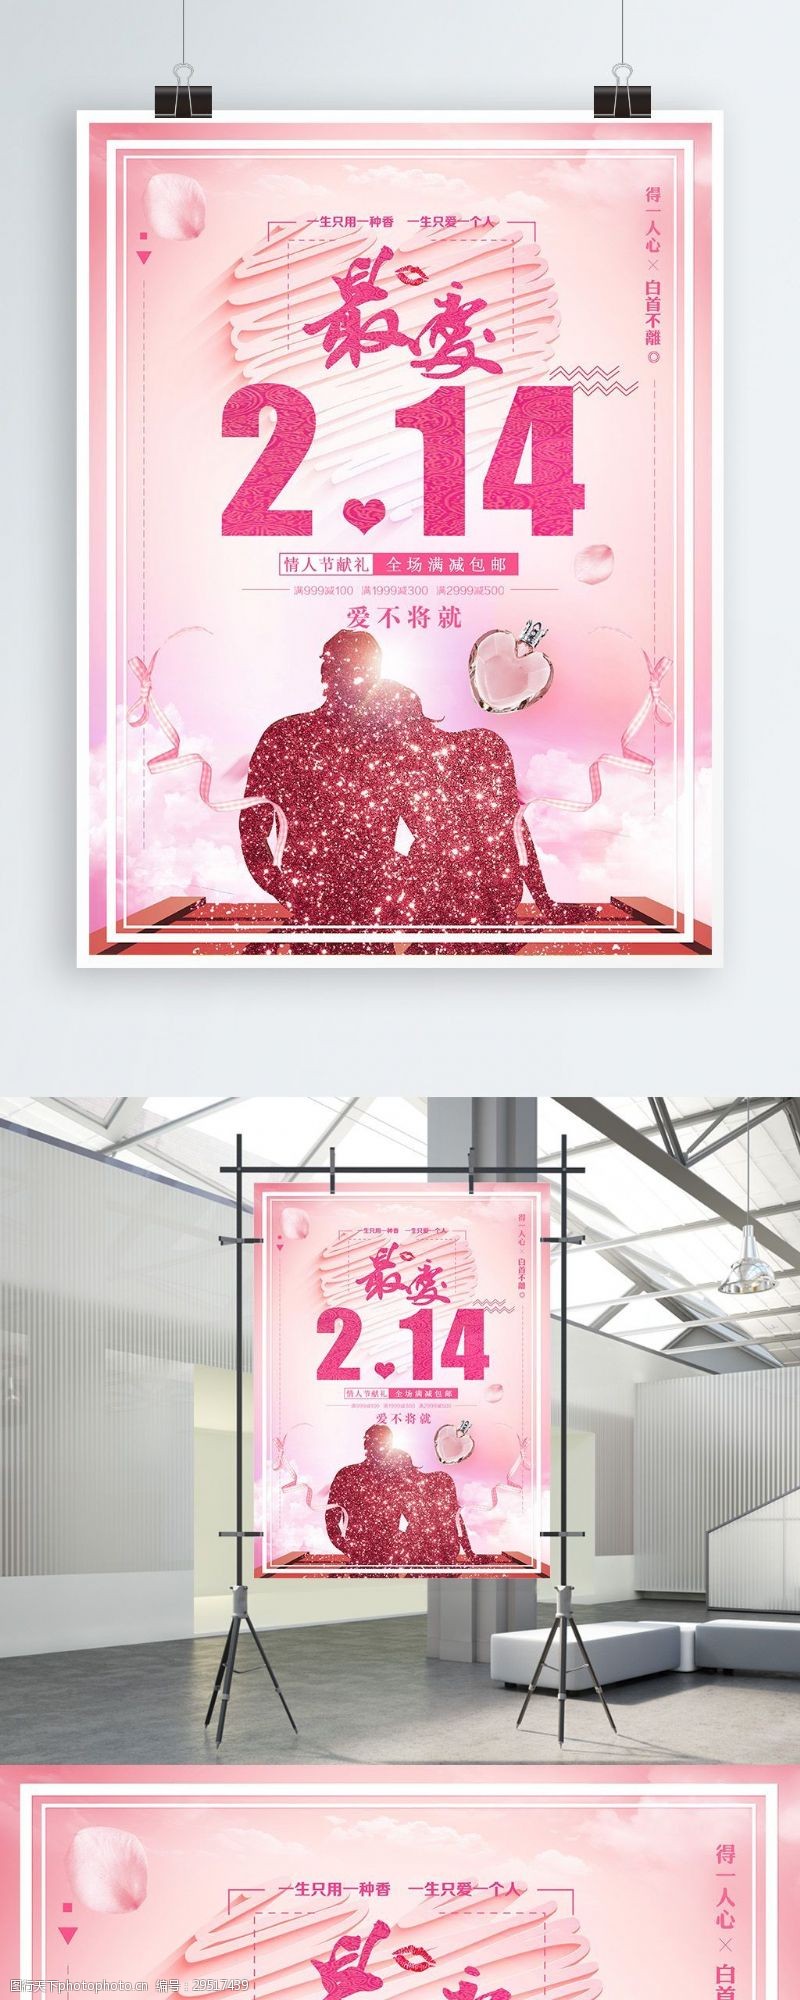 最爱2.14情人节香水促销海报设计psd